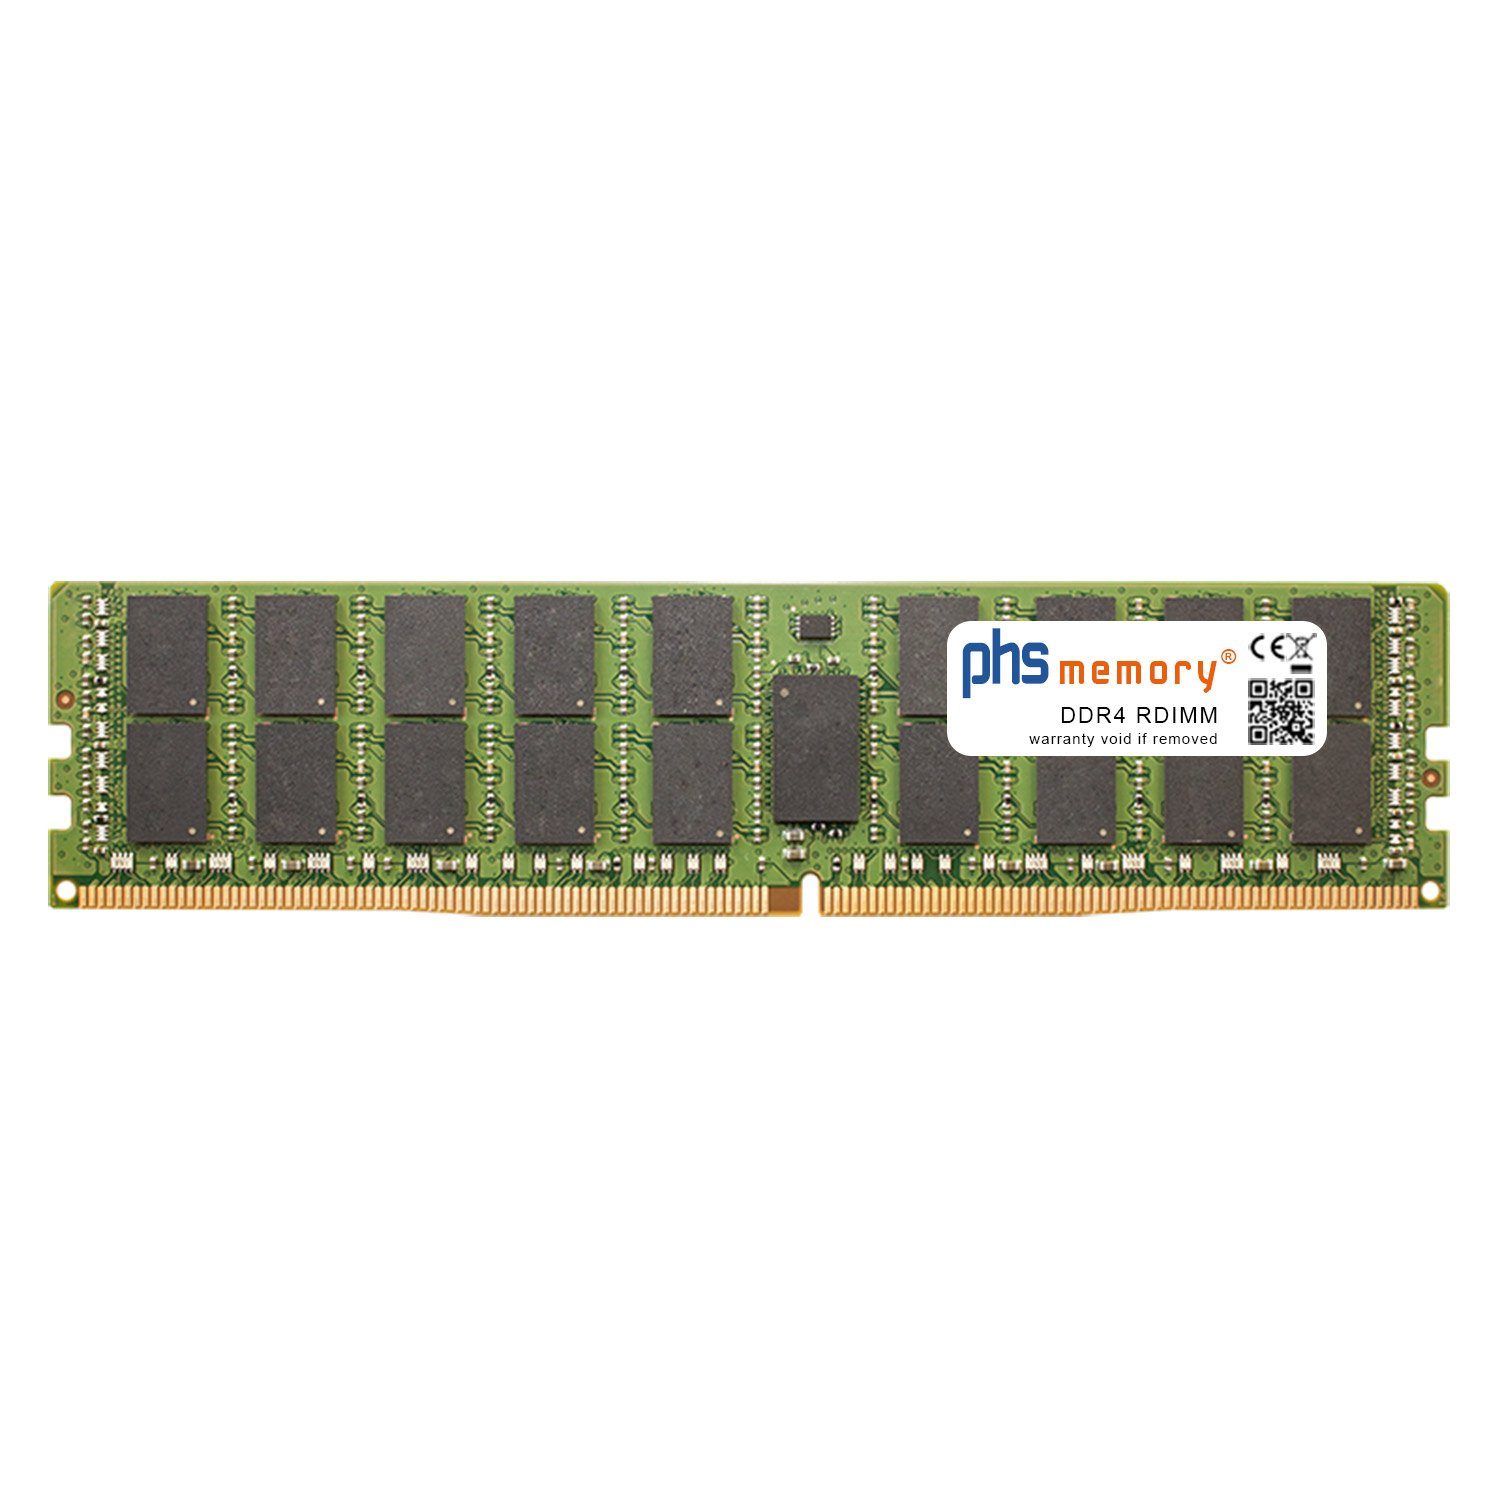 PHS-memory RAM für Supermicro SuperBlade SBI-7128RG-X Arbeitsspeicher